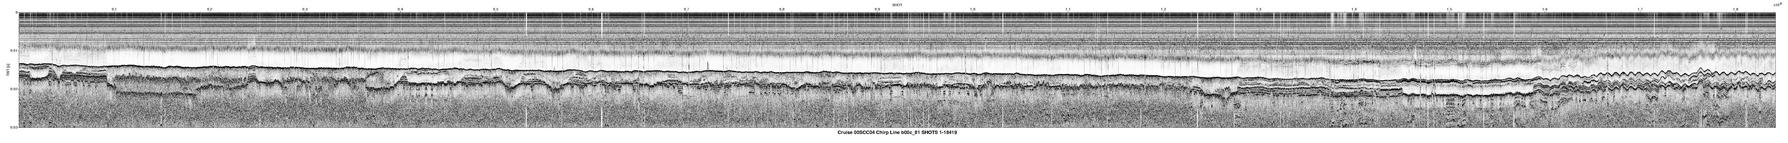 00SCC04 b00c_81 seismic profile image